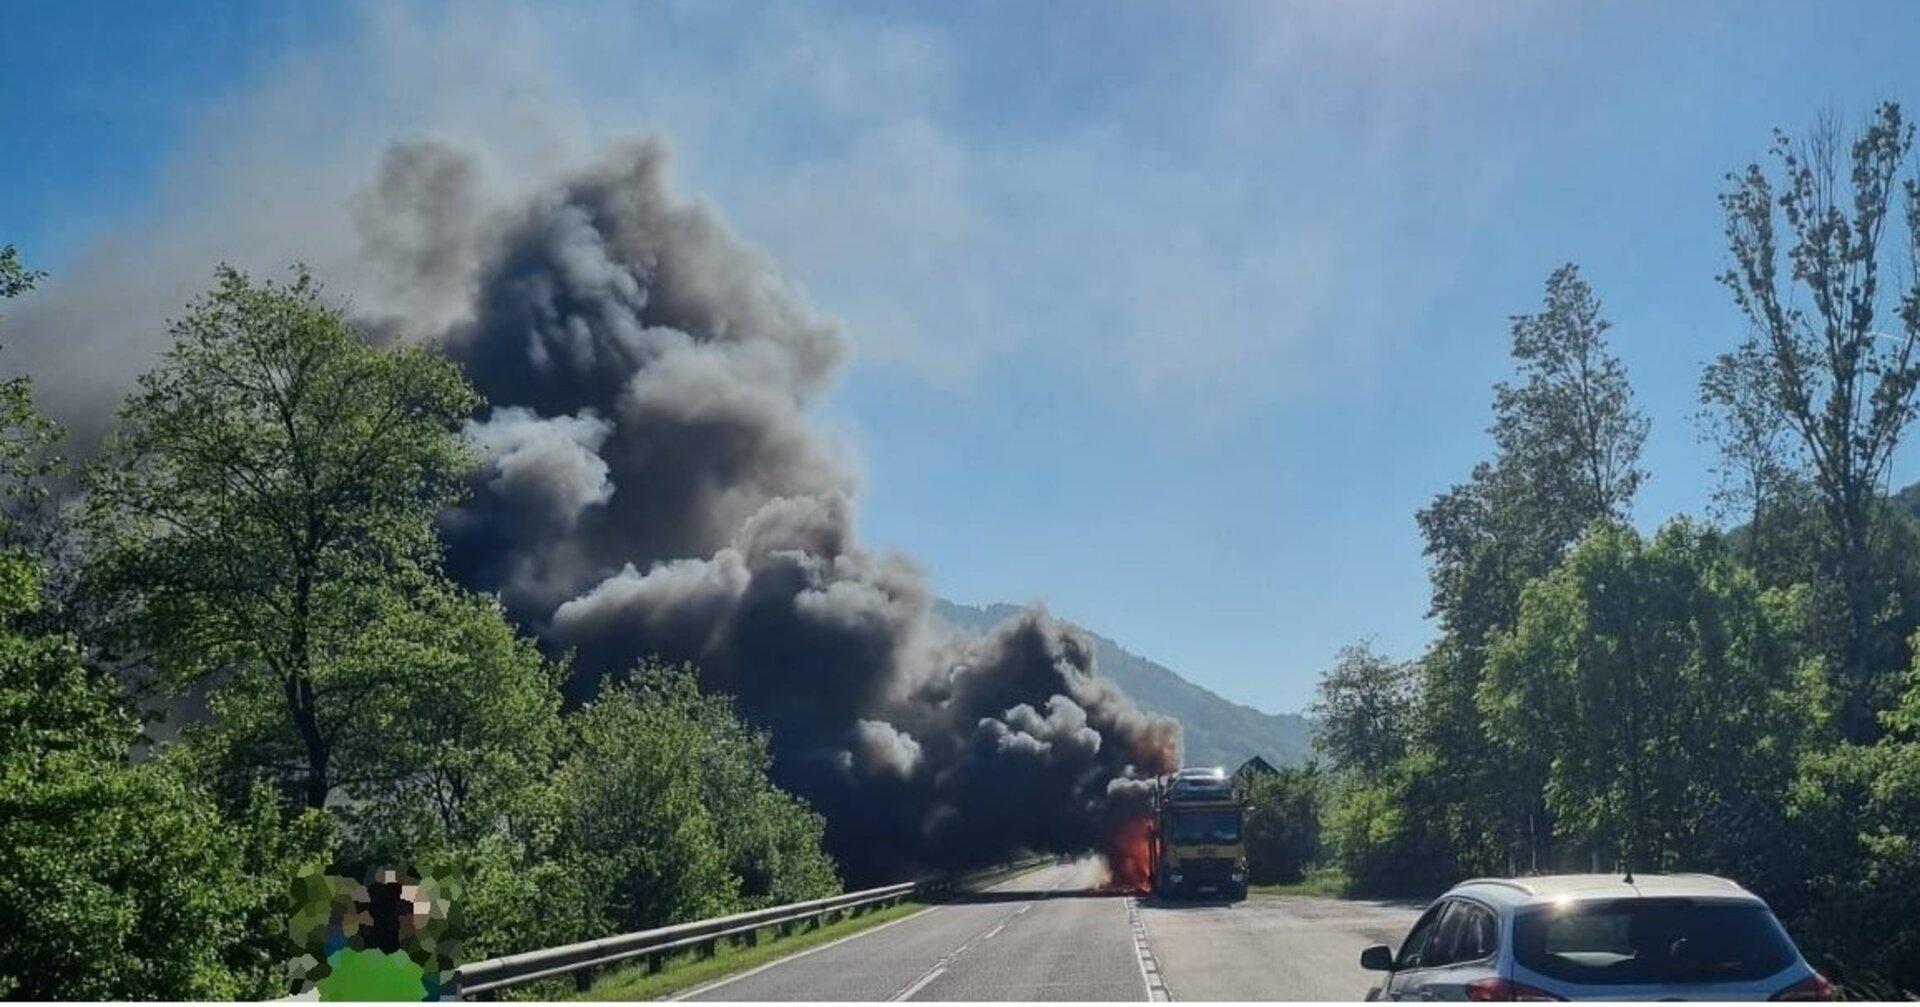 NÖ: Großbrand mit vier E-Autos auf Transportanhänger